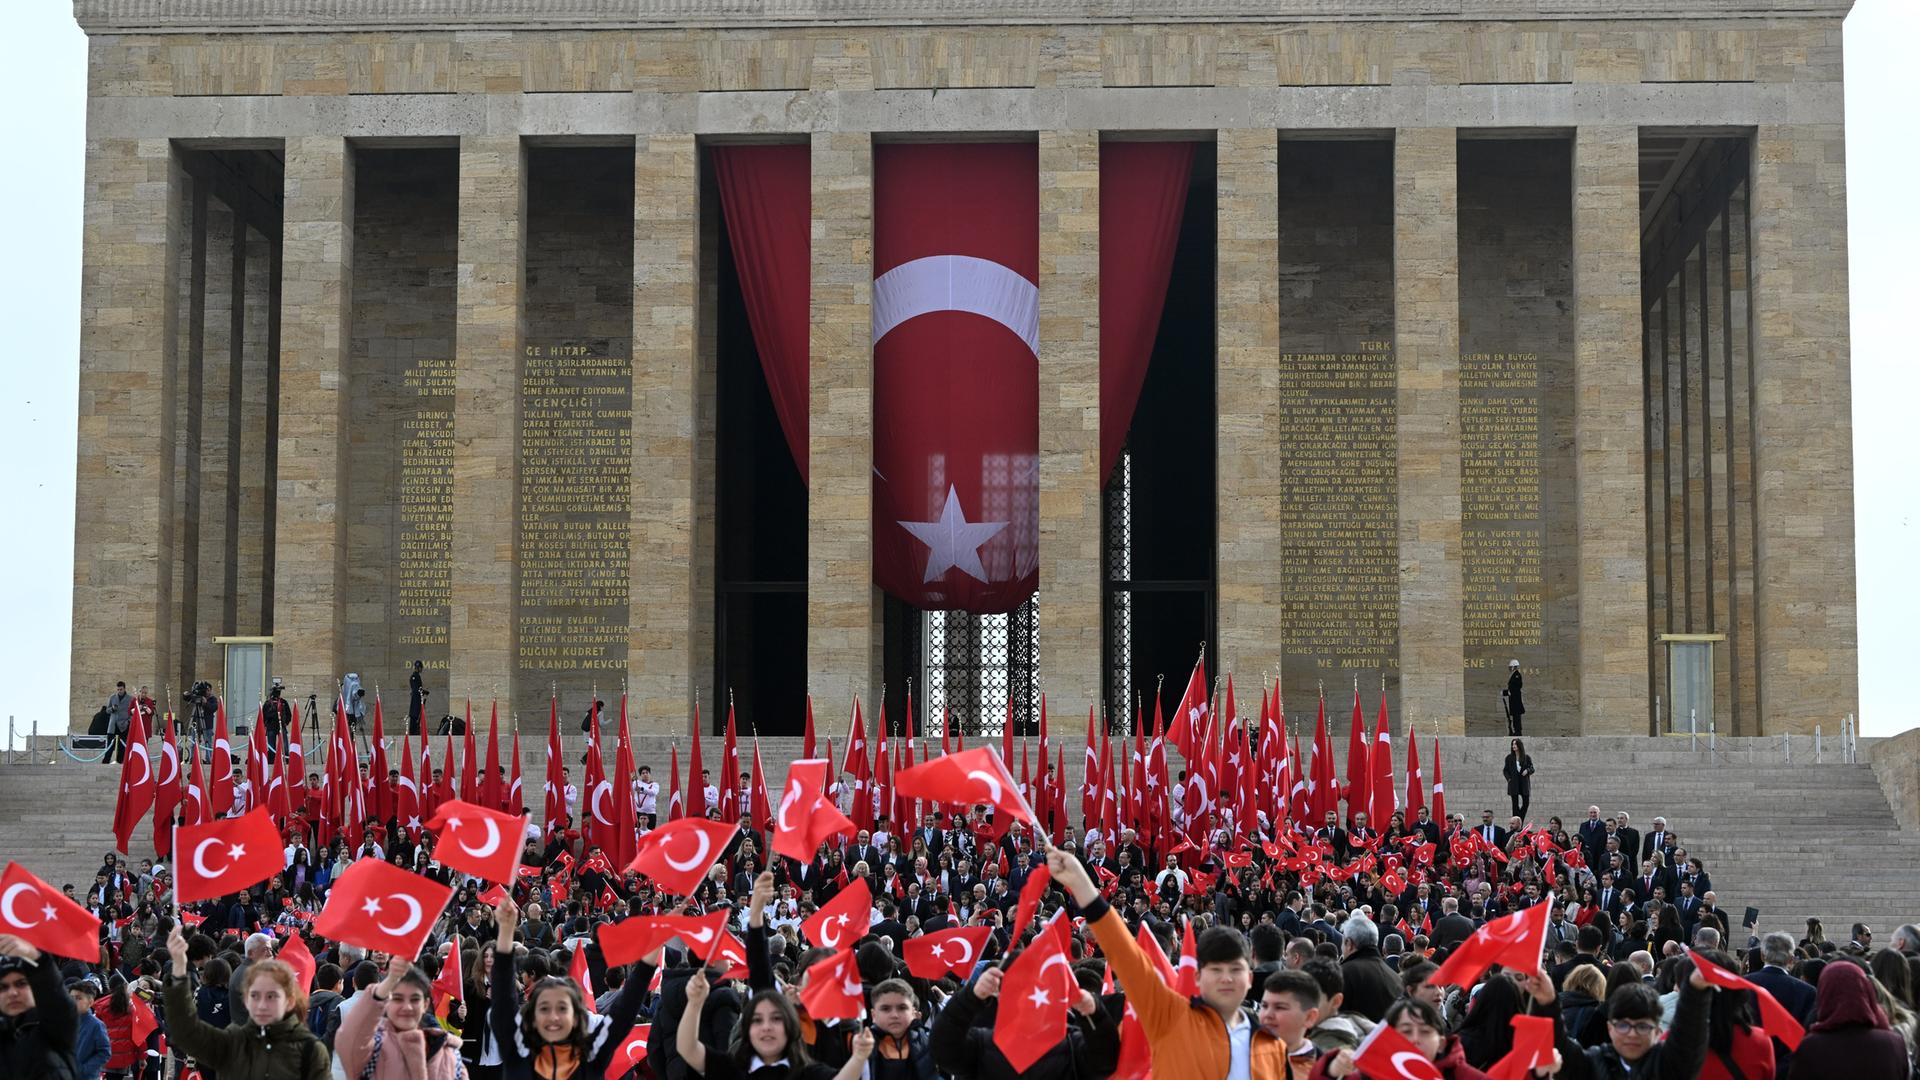 Kinder besuchen das Mausoleum des Gründers der Türkischen Republik, Mustafa Kemal Atatürk. Sie schwenken kleine türkische Fahnen, am Mausoleum hängt eine große Nationalflagge.